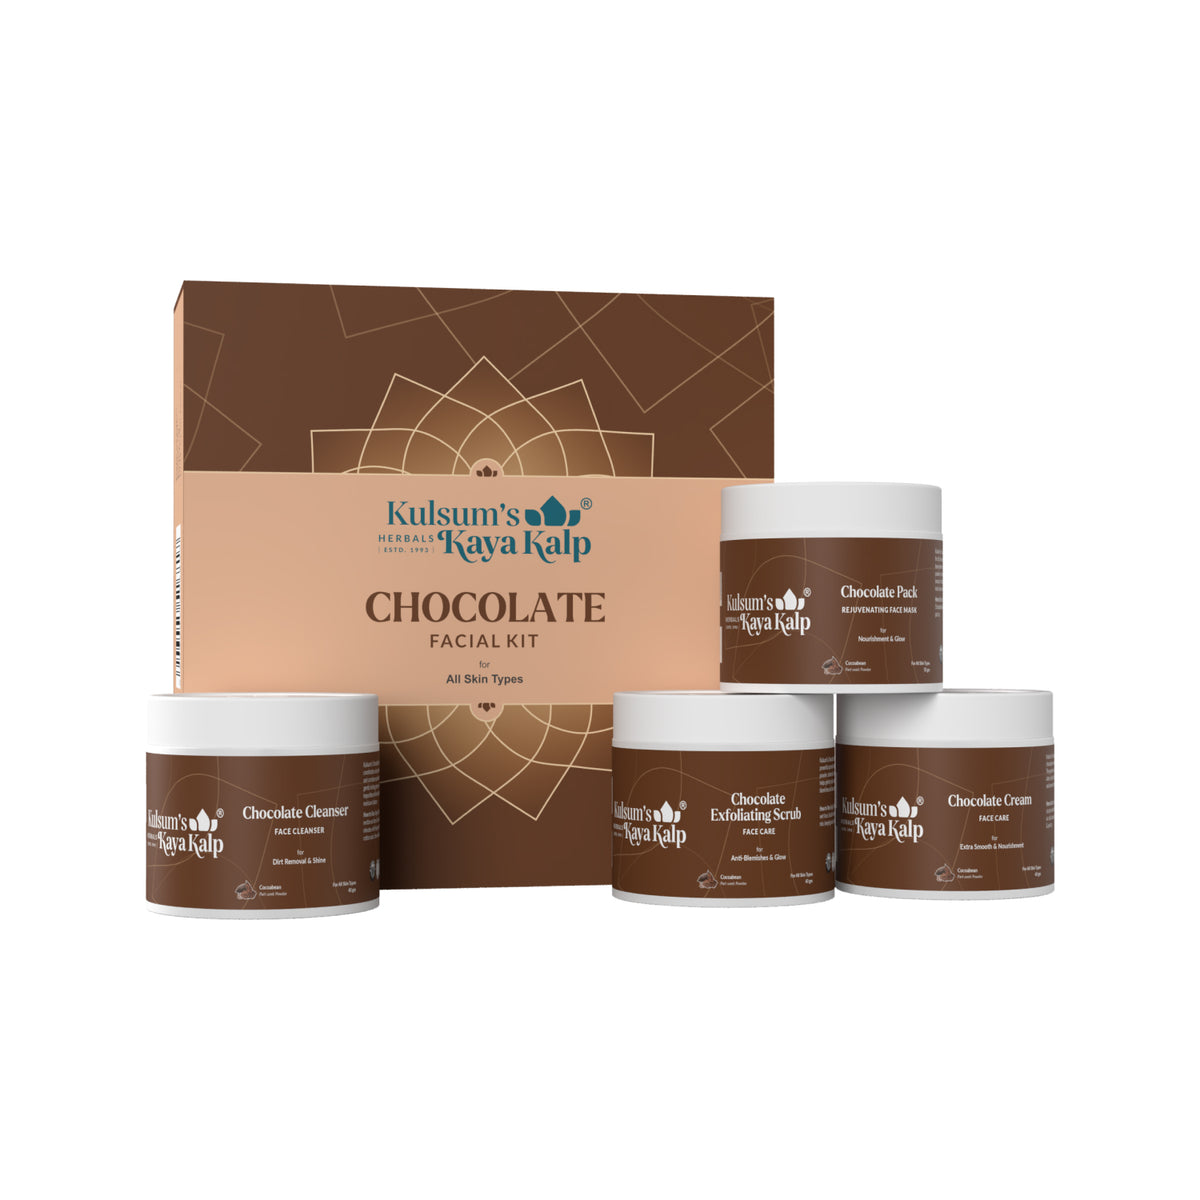 Kulsum's Kaya Kalp Herbals Chocolate Facial kit For Women & Men,All Skin Types, 15 g